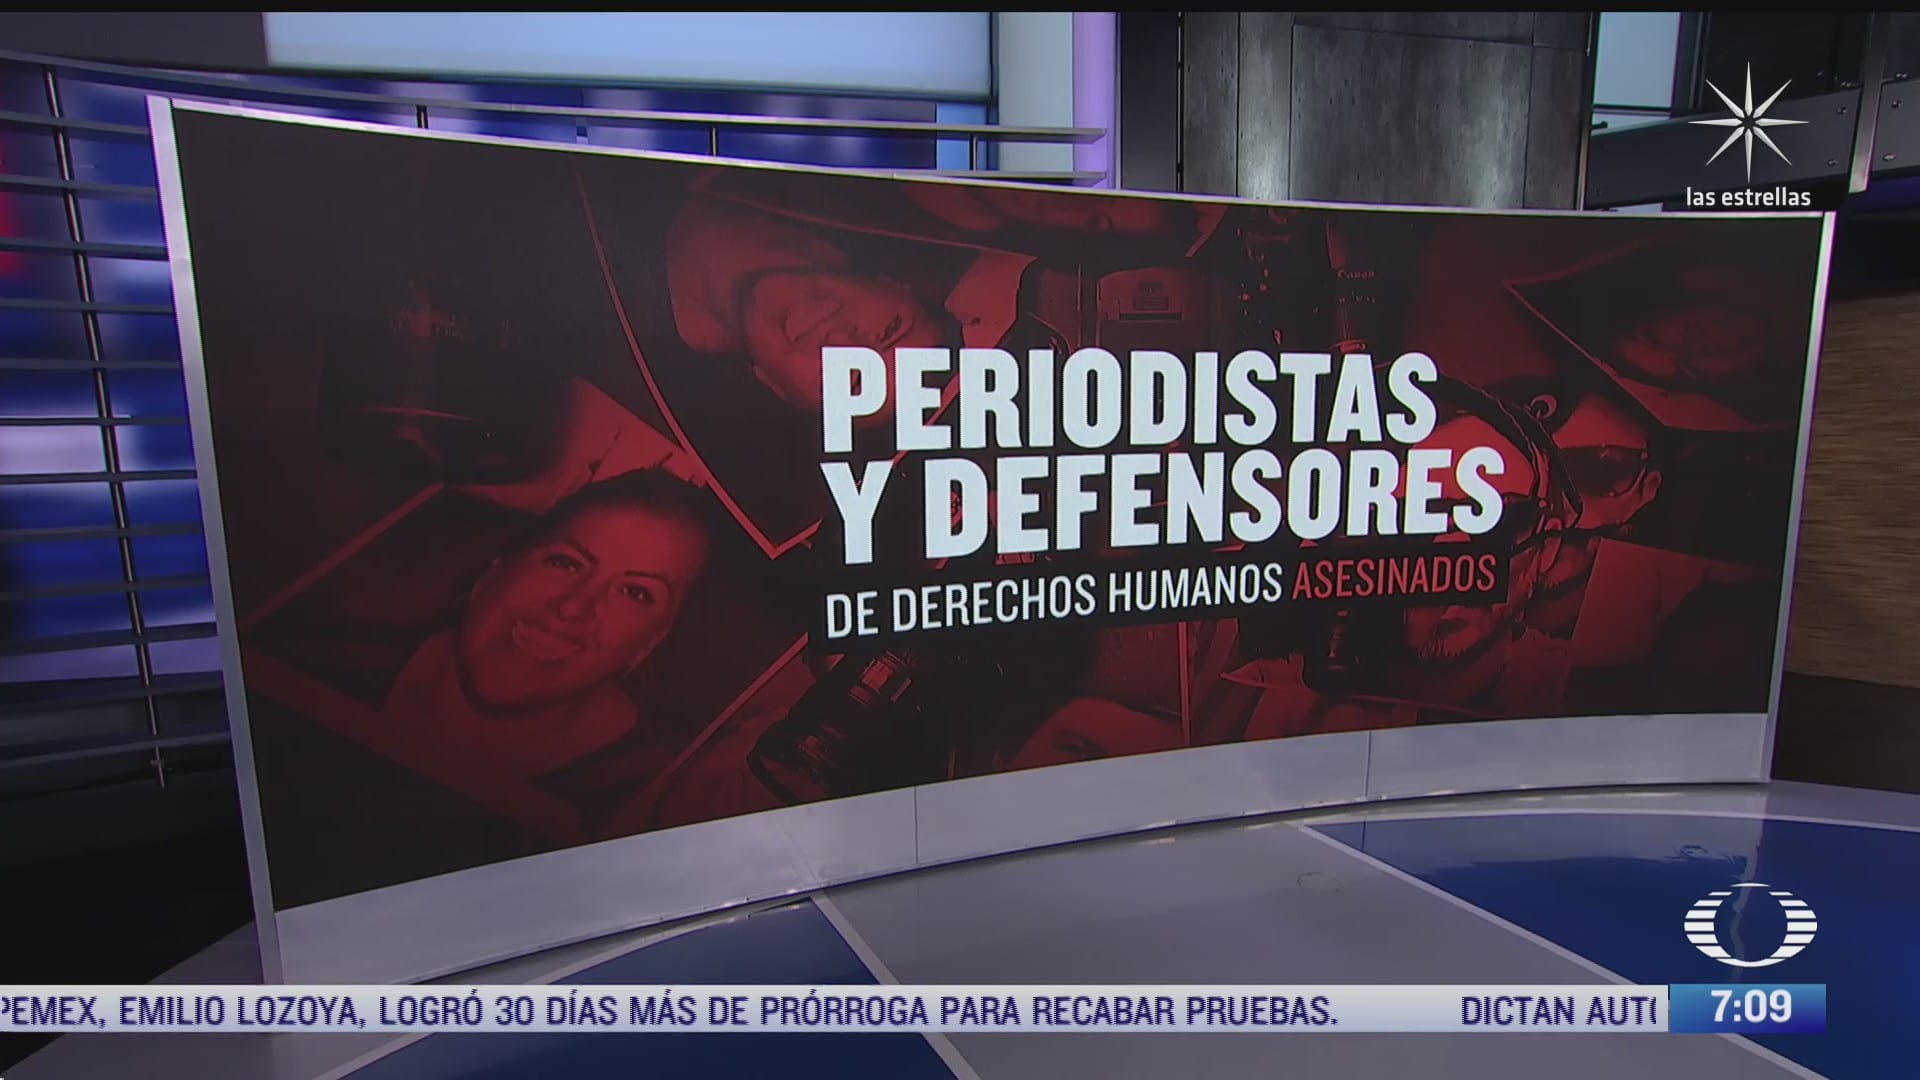 43 periodistas han sido asesinados en mexico desde